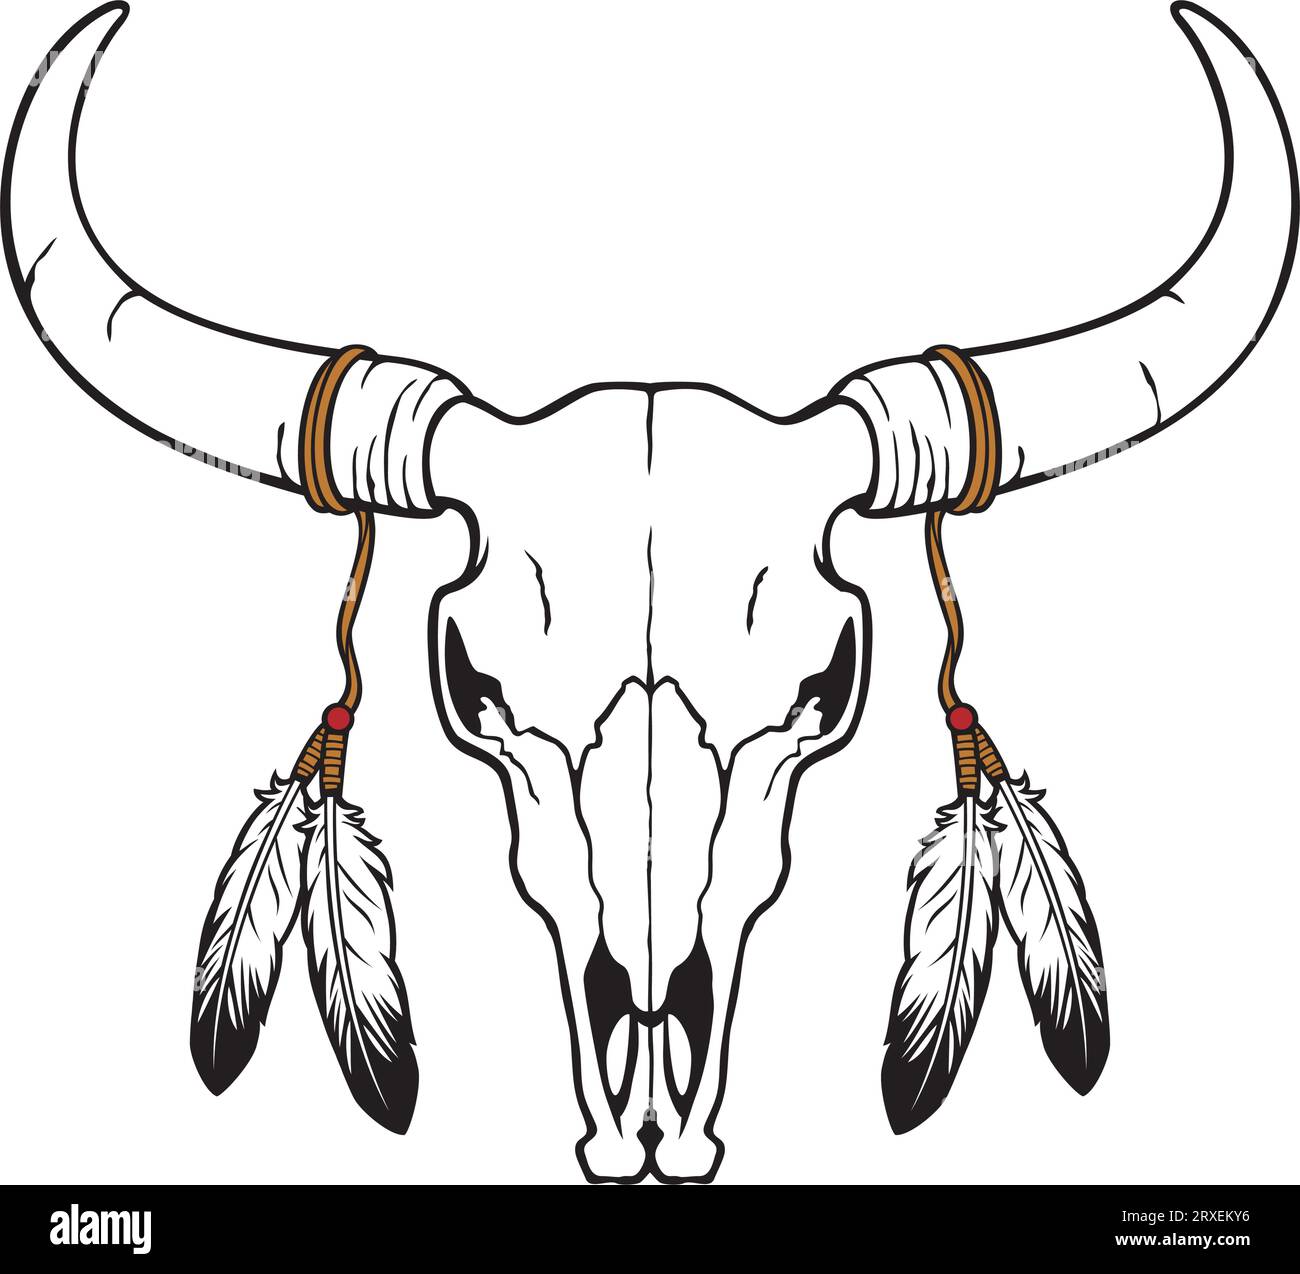 Crâne de taureau ou de vache natif américain avec plumes (illustration vectorielle) Illustration de Vecteur